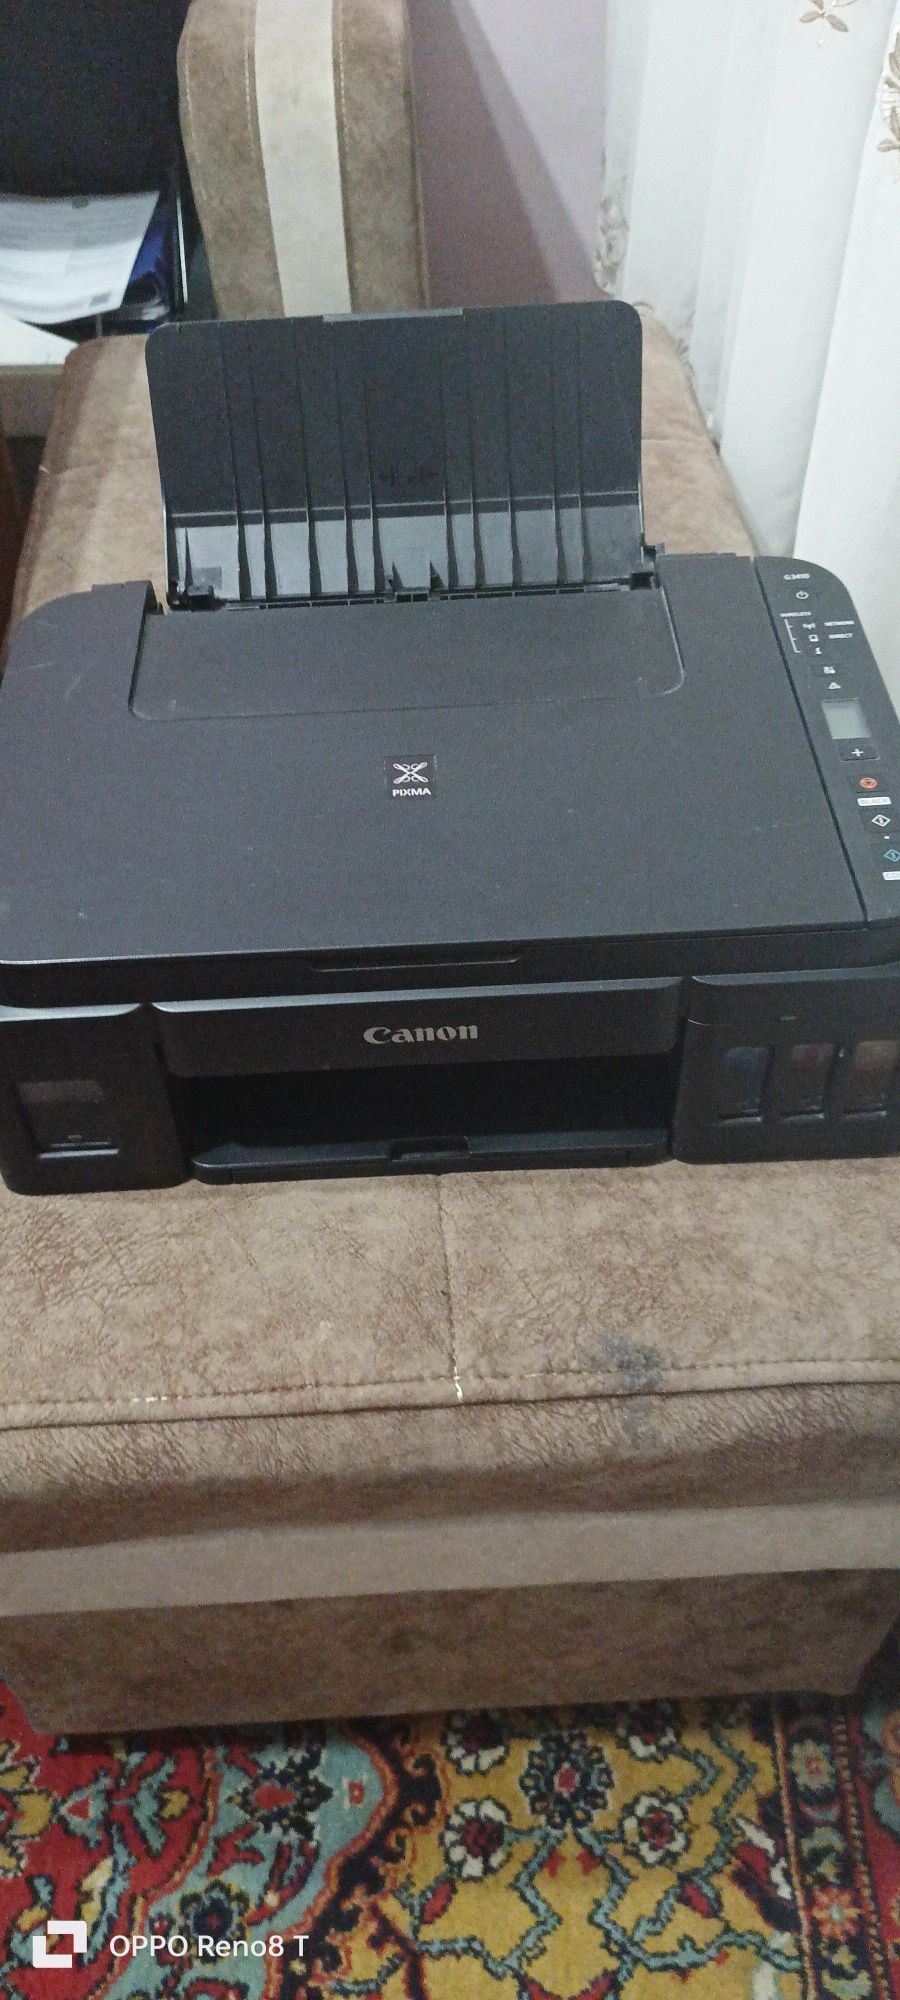 Canon G3410 printer